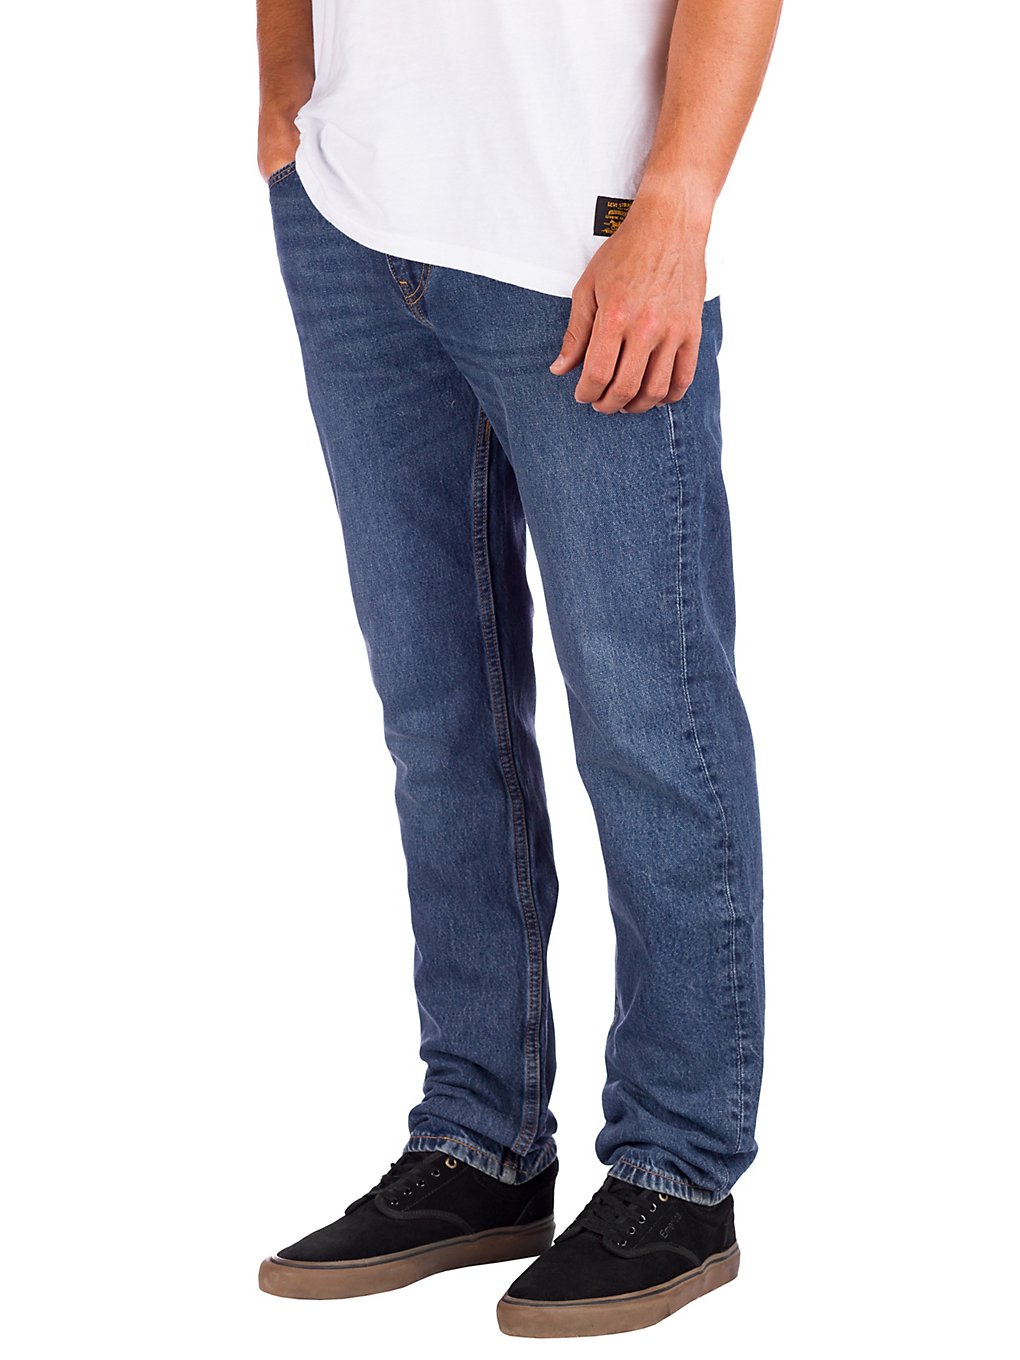 Levi's Skate 511 Slim 5 Pocket Jeans blau